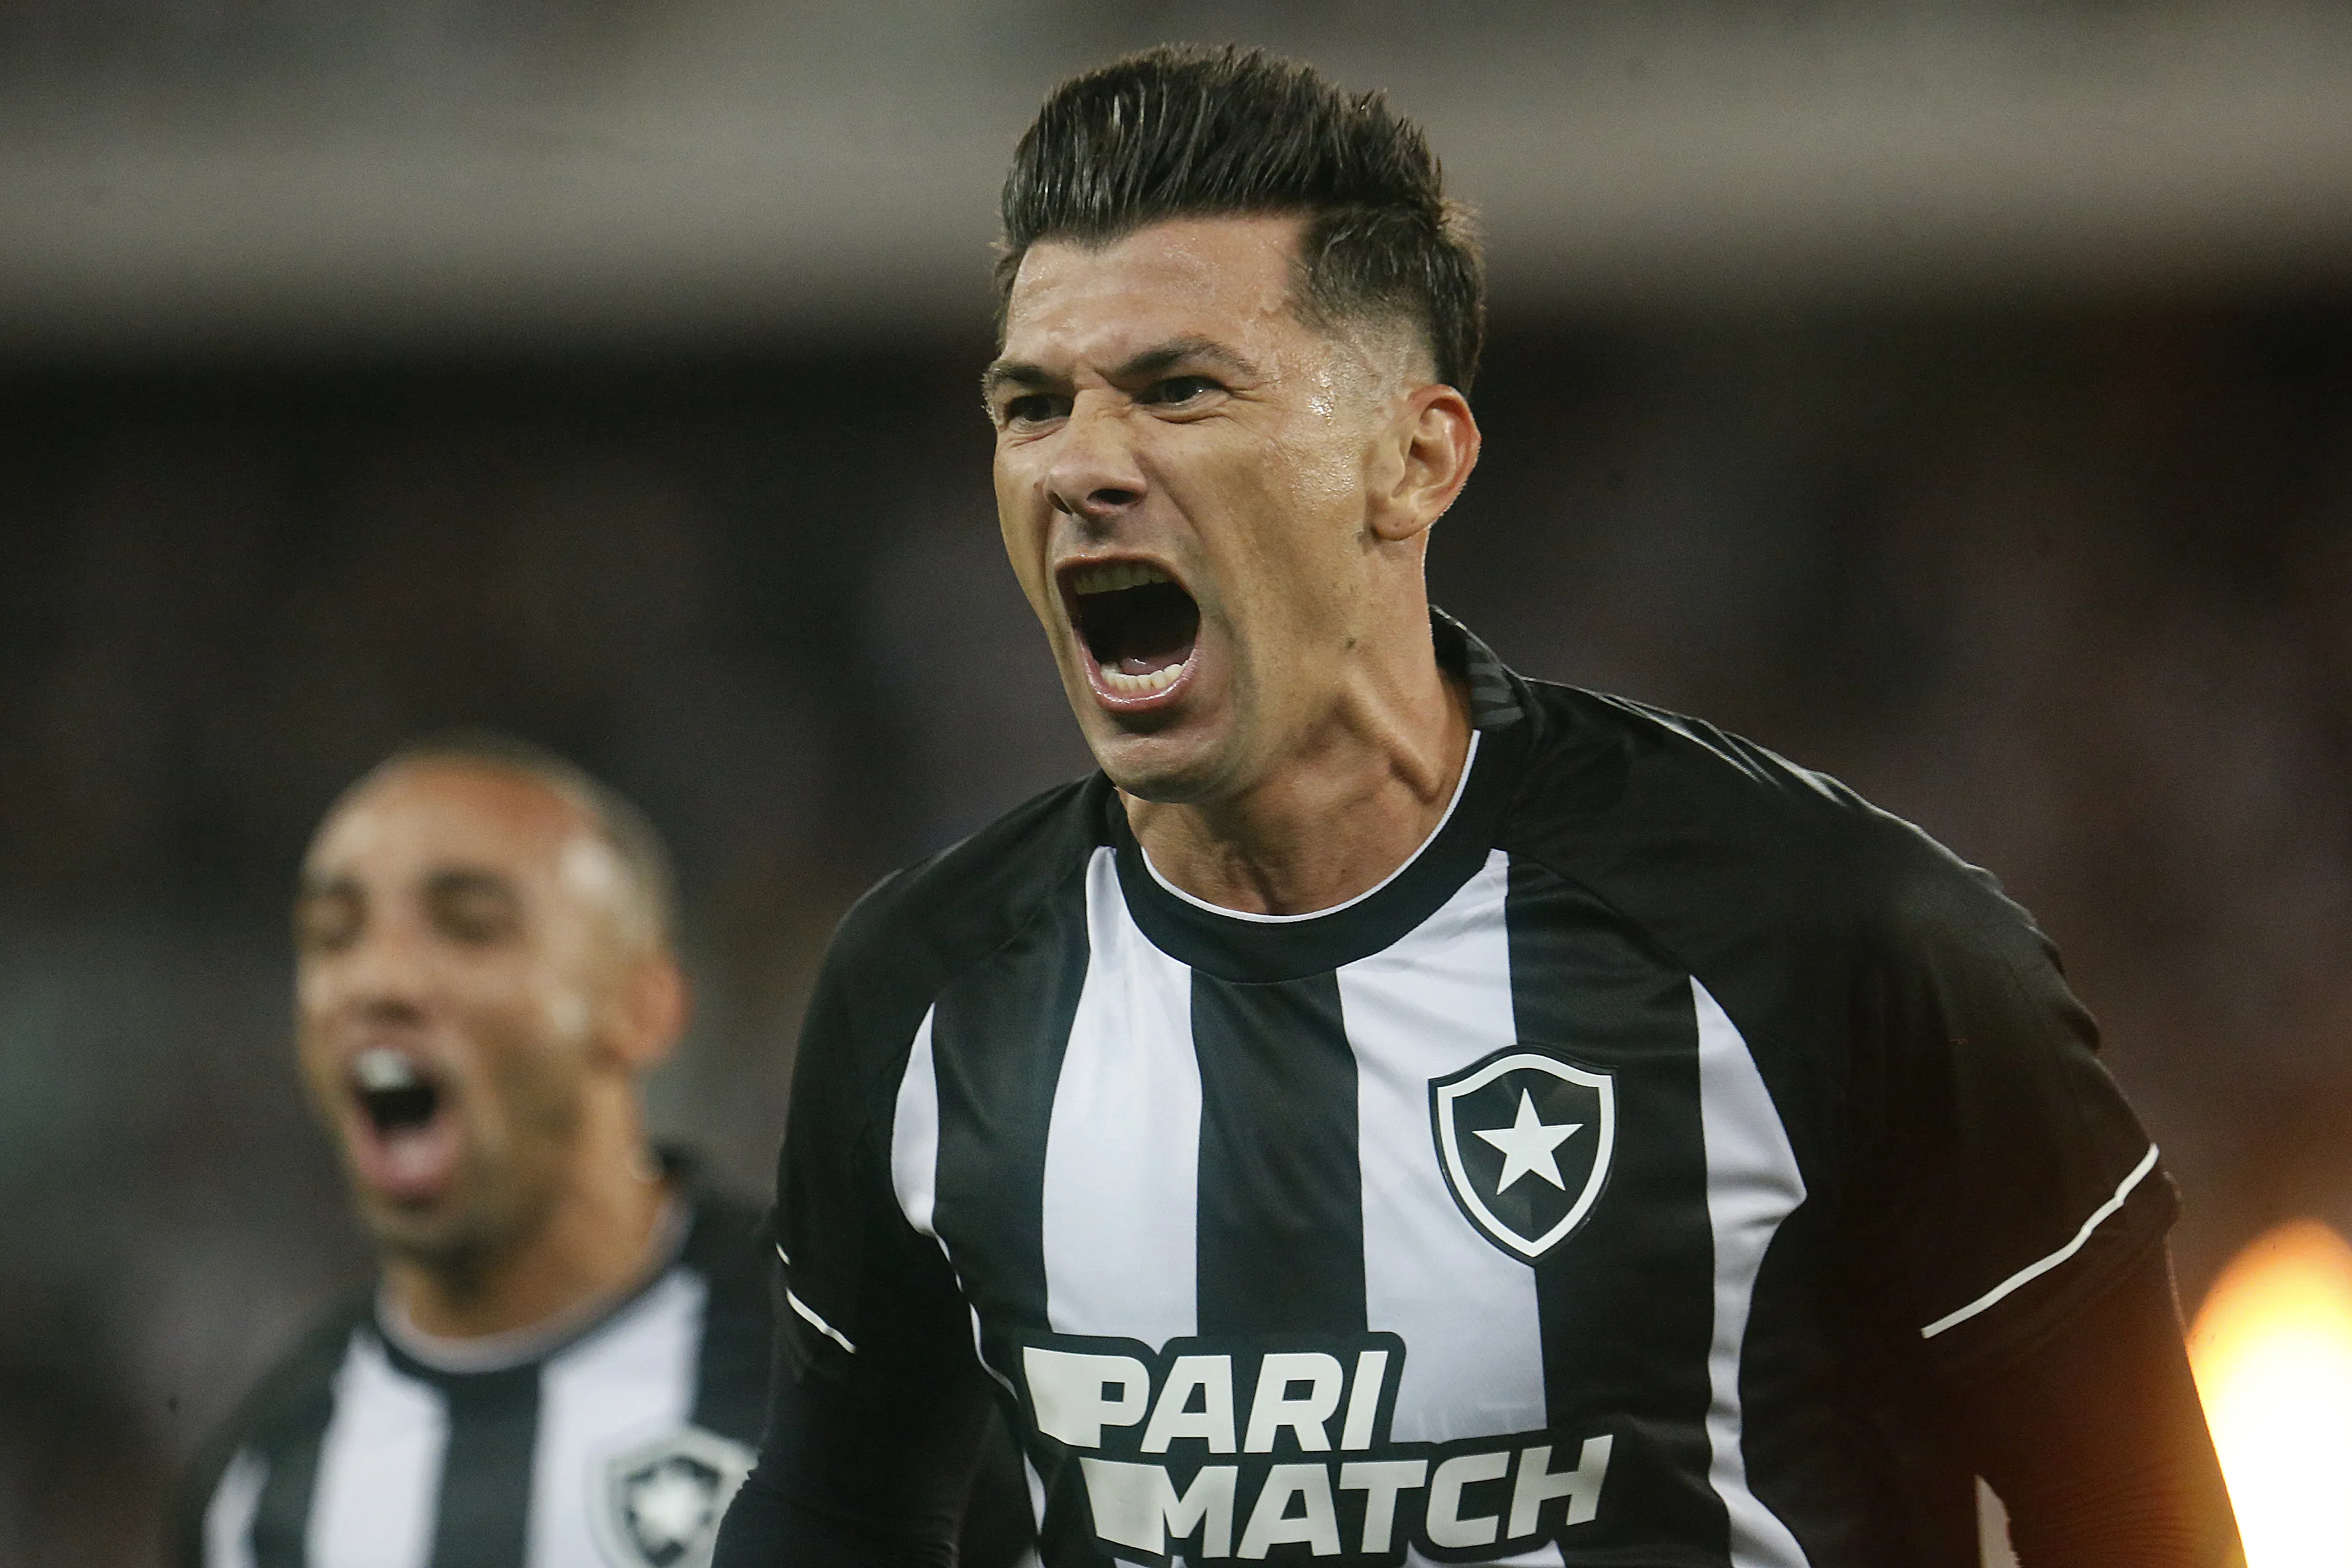 Cuesta marcou o gol que deu a vitória ao Botafogo